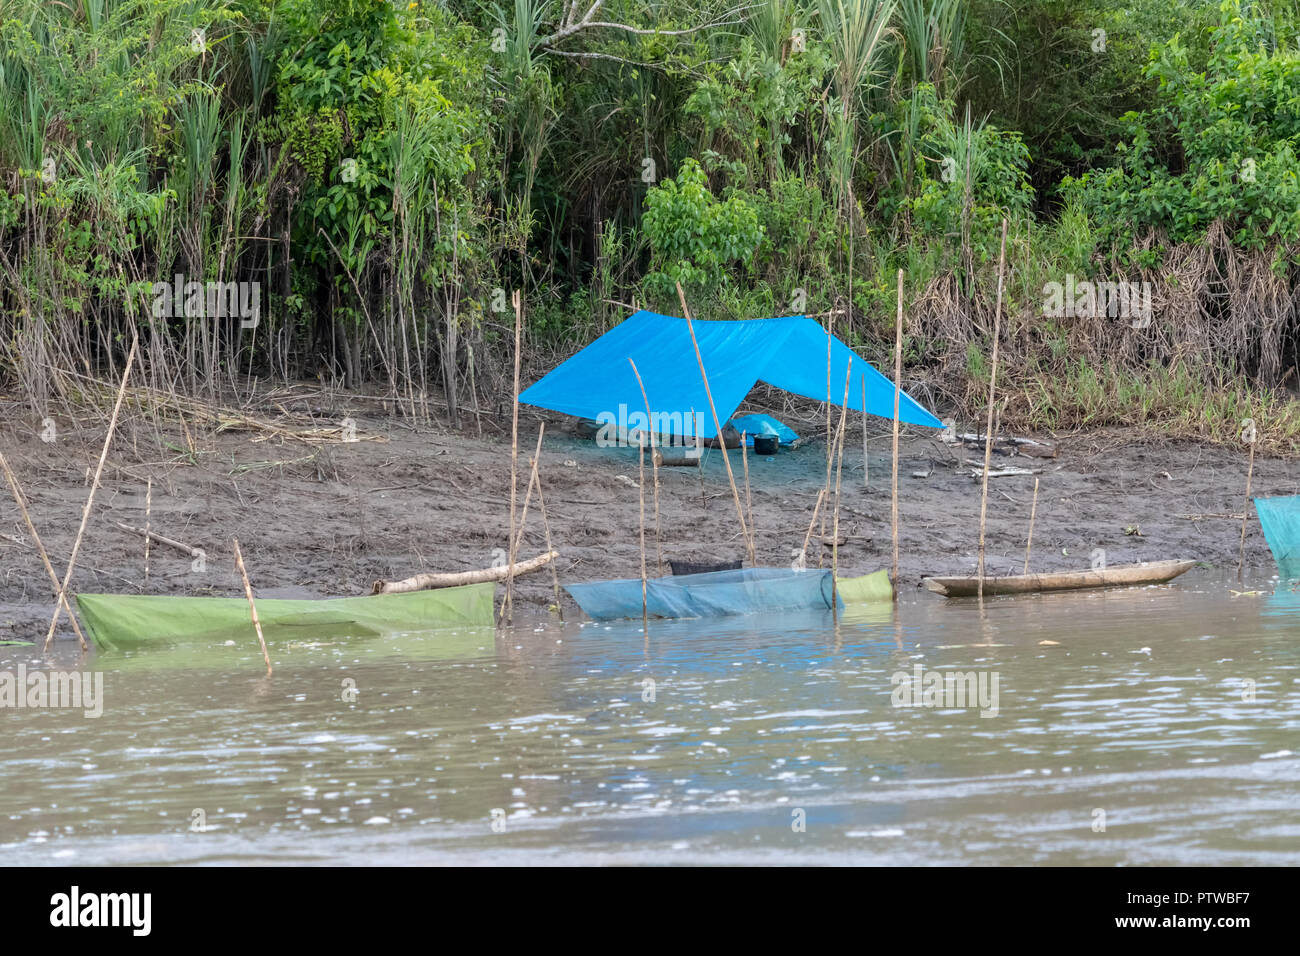 La réserve de Pacaya Samiria, Pérou, Amérique du Sud. Camp de pêche avec une bâche pour une tente, en compagnie de plusieurs enclos pour garder leurs poissons vivants Banque D'Images